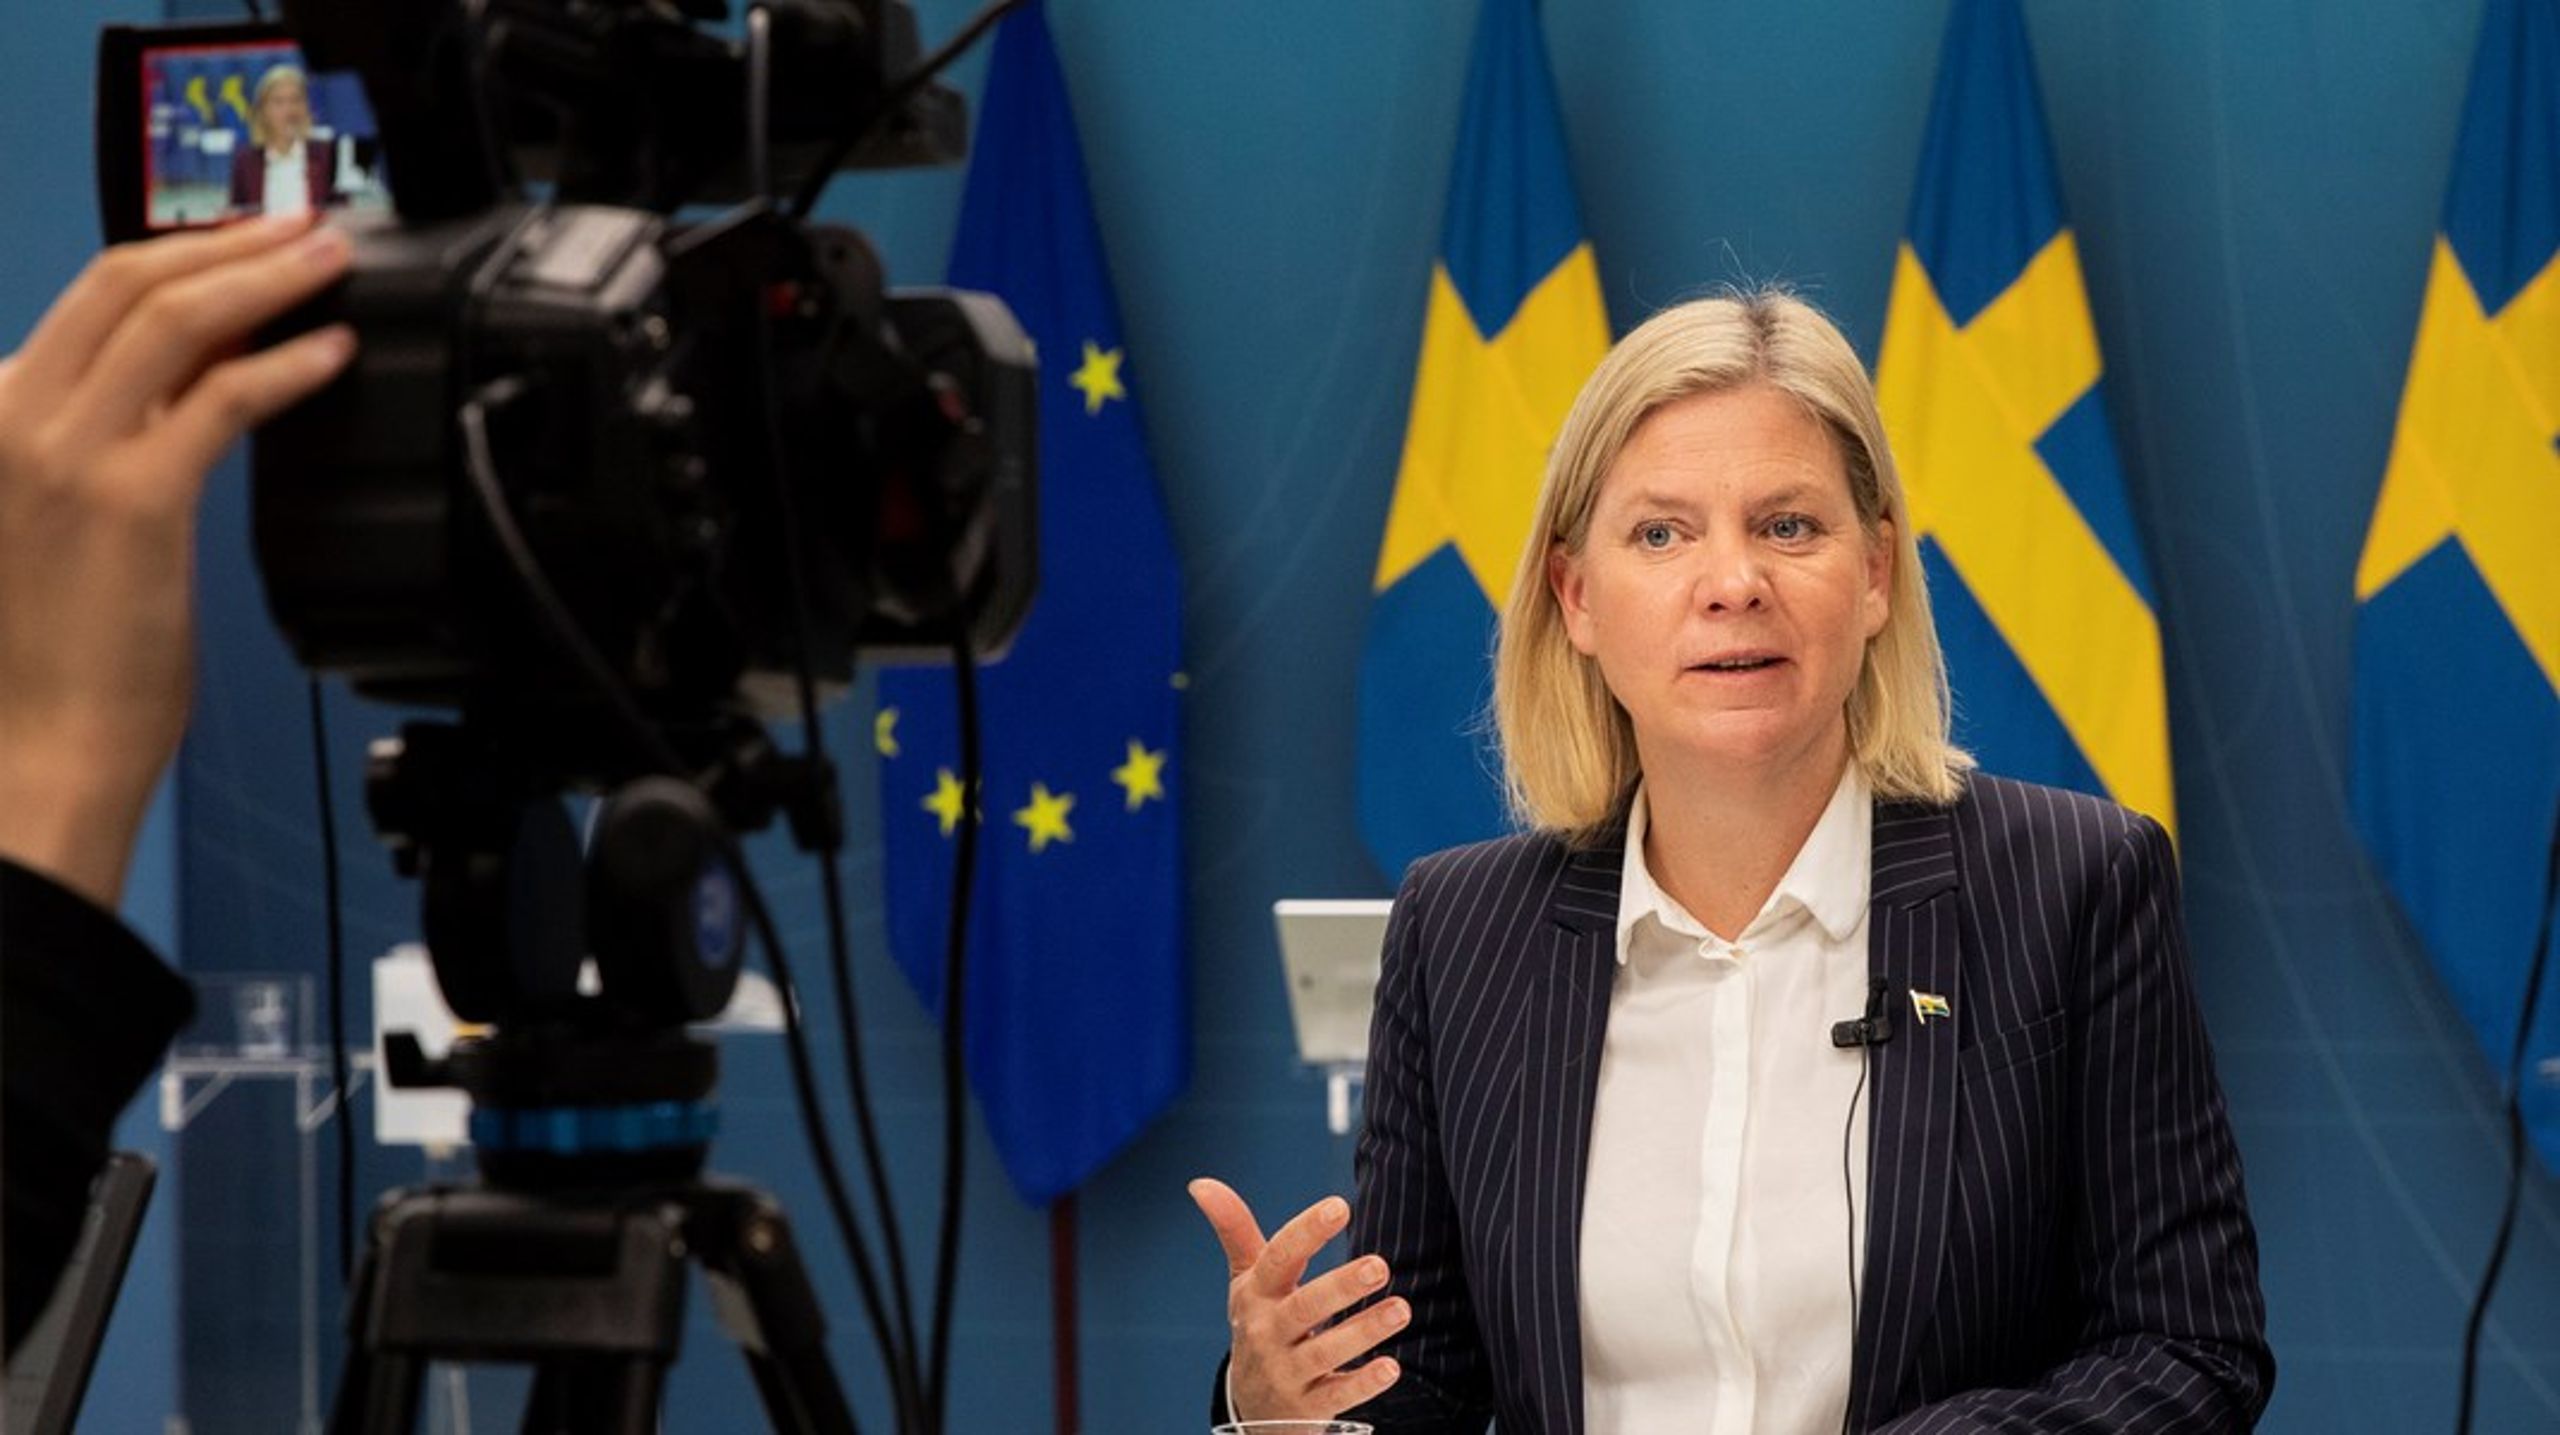 ”DN-intervjun ger även en föraning om magnituden i utmaningen för Magdalena Andersson att i medierna etablera en bild av hennes politiska ledarskap som inte blir till hennes nackdel.”